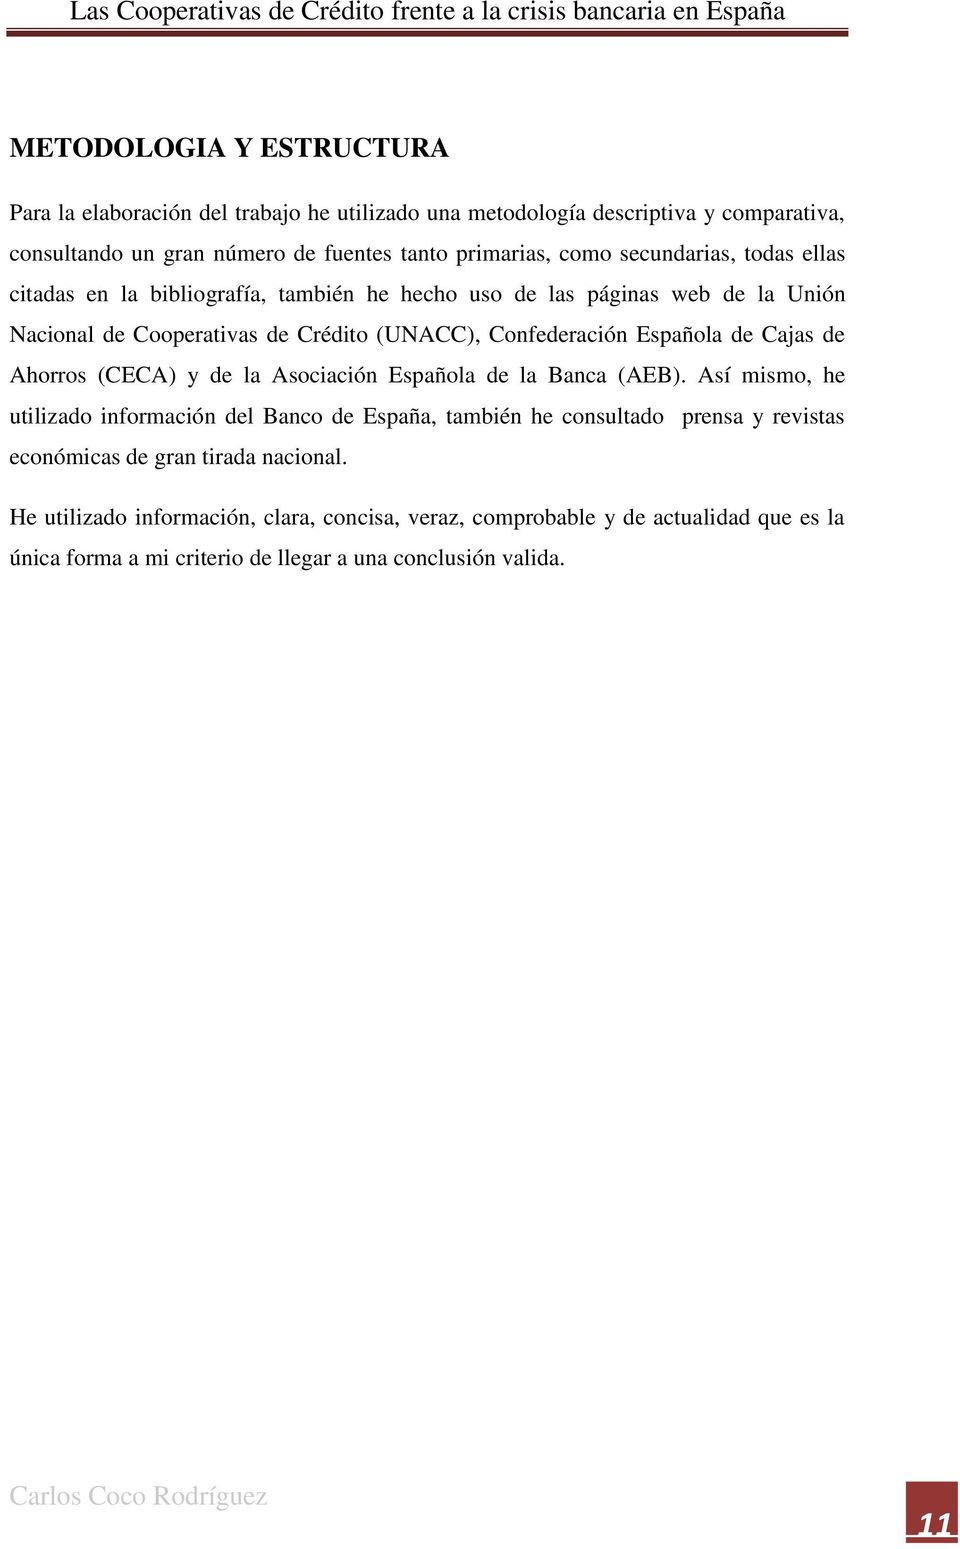 Cajas de Ahorros (CECA) y de la Asociación Española de la Banca (AEB).